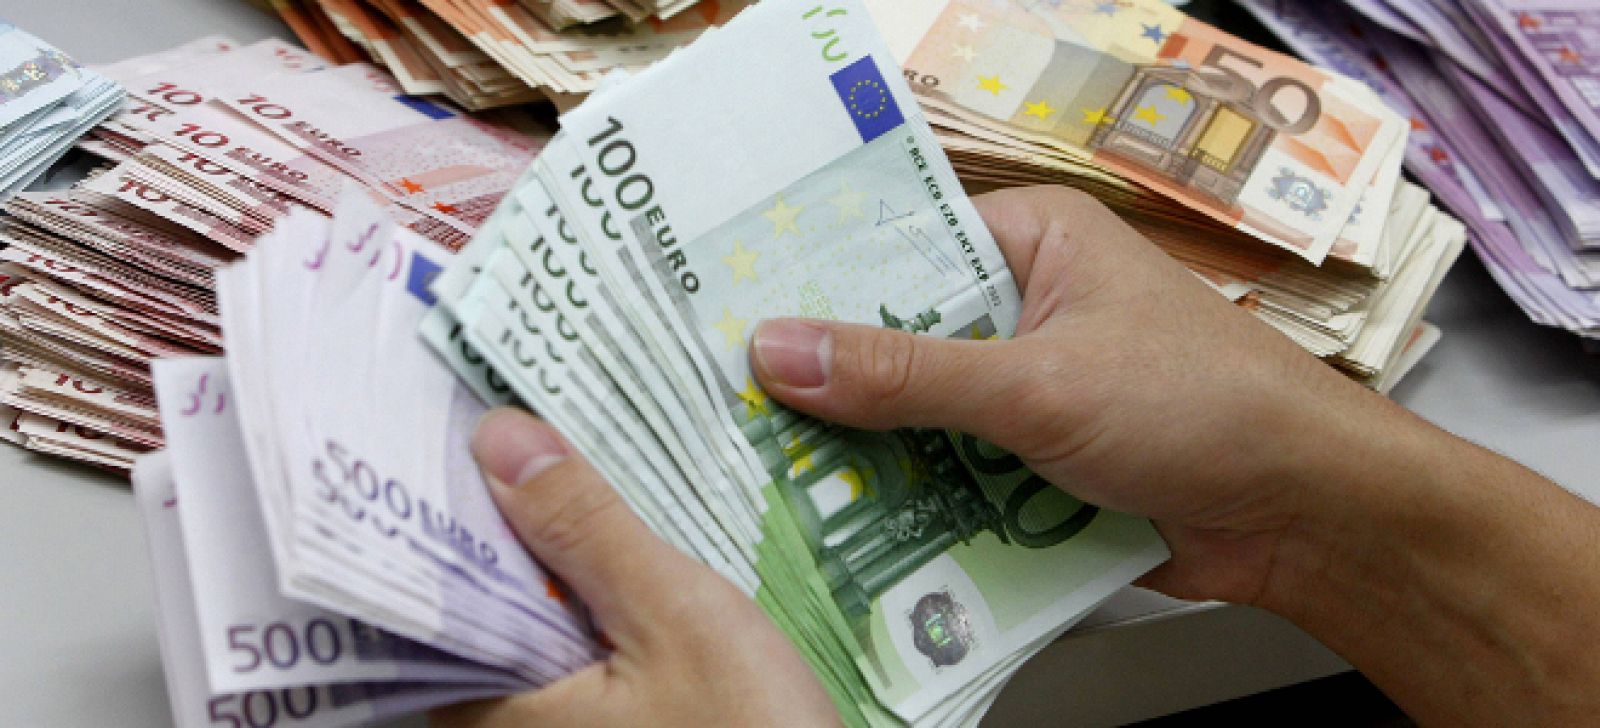 Recuento de billetes de euro